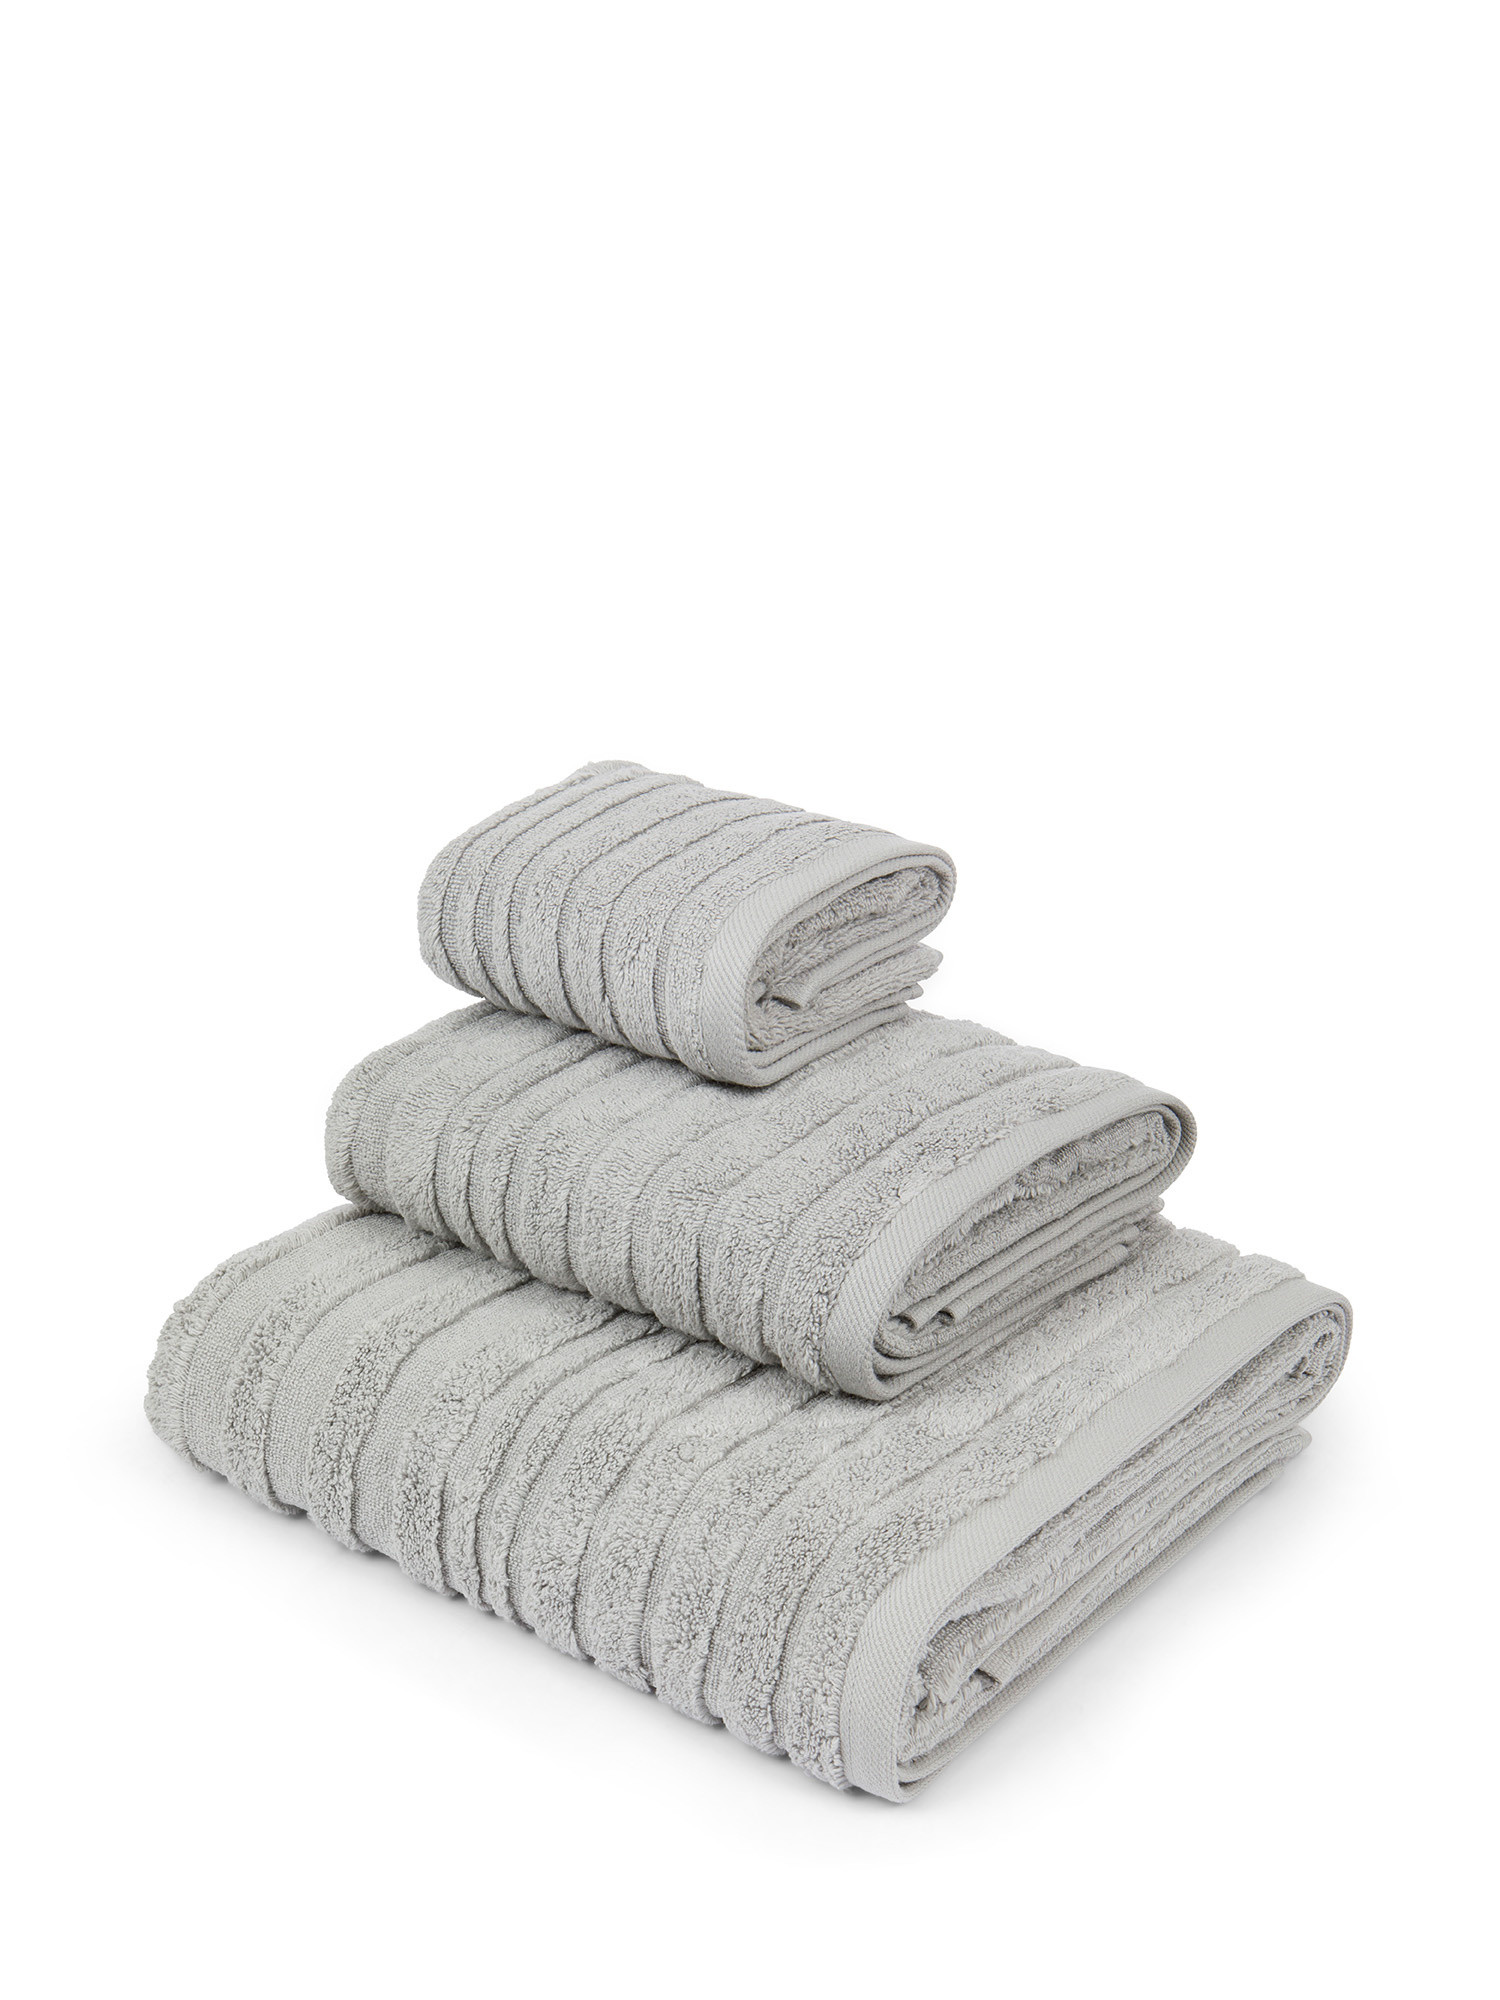 Asciugamano in spugna di cotone con righe a rilievo, Grigio, large image number 0